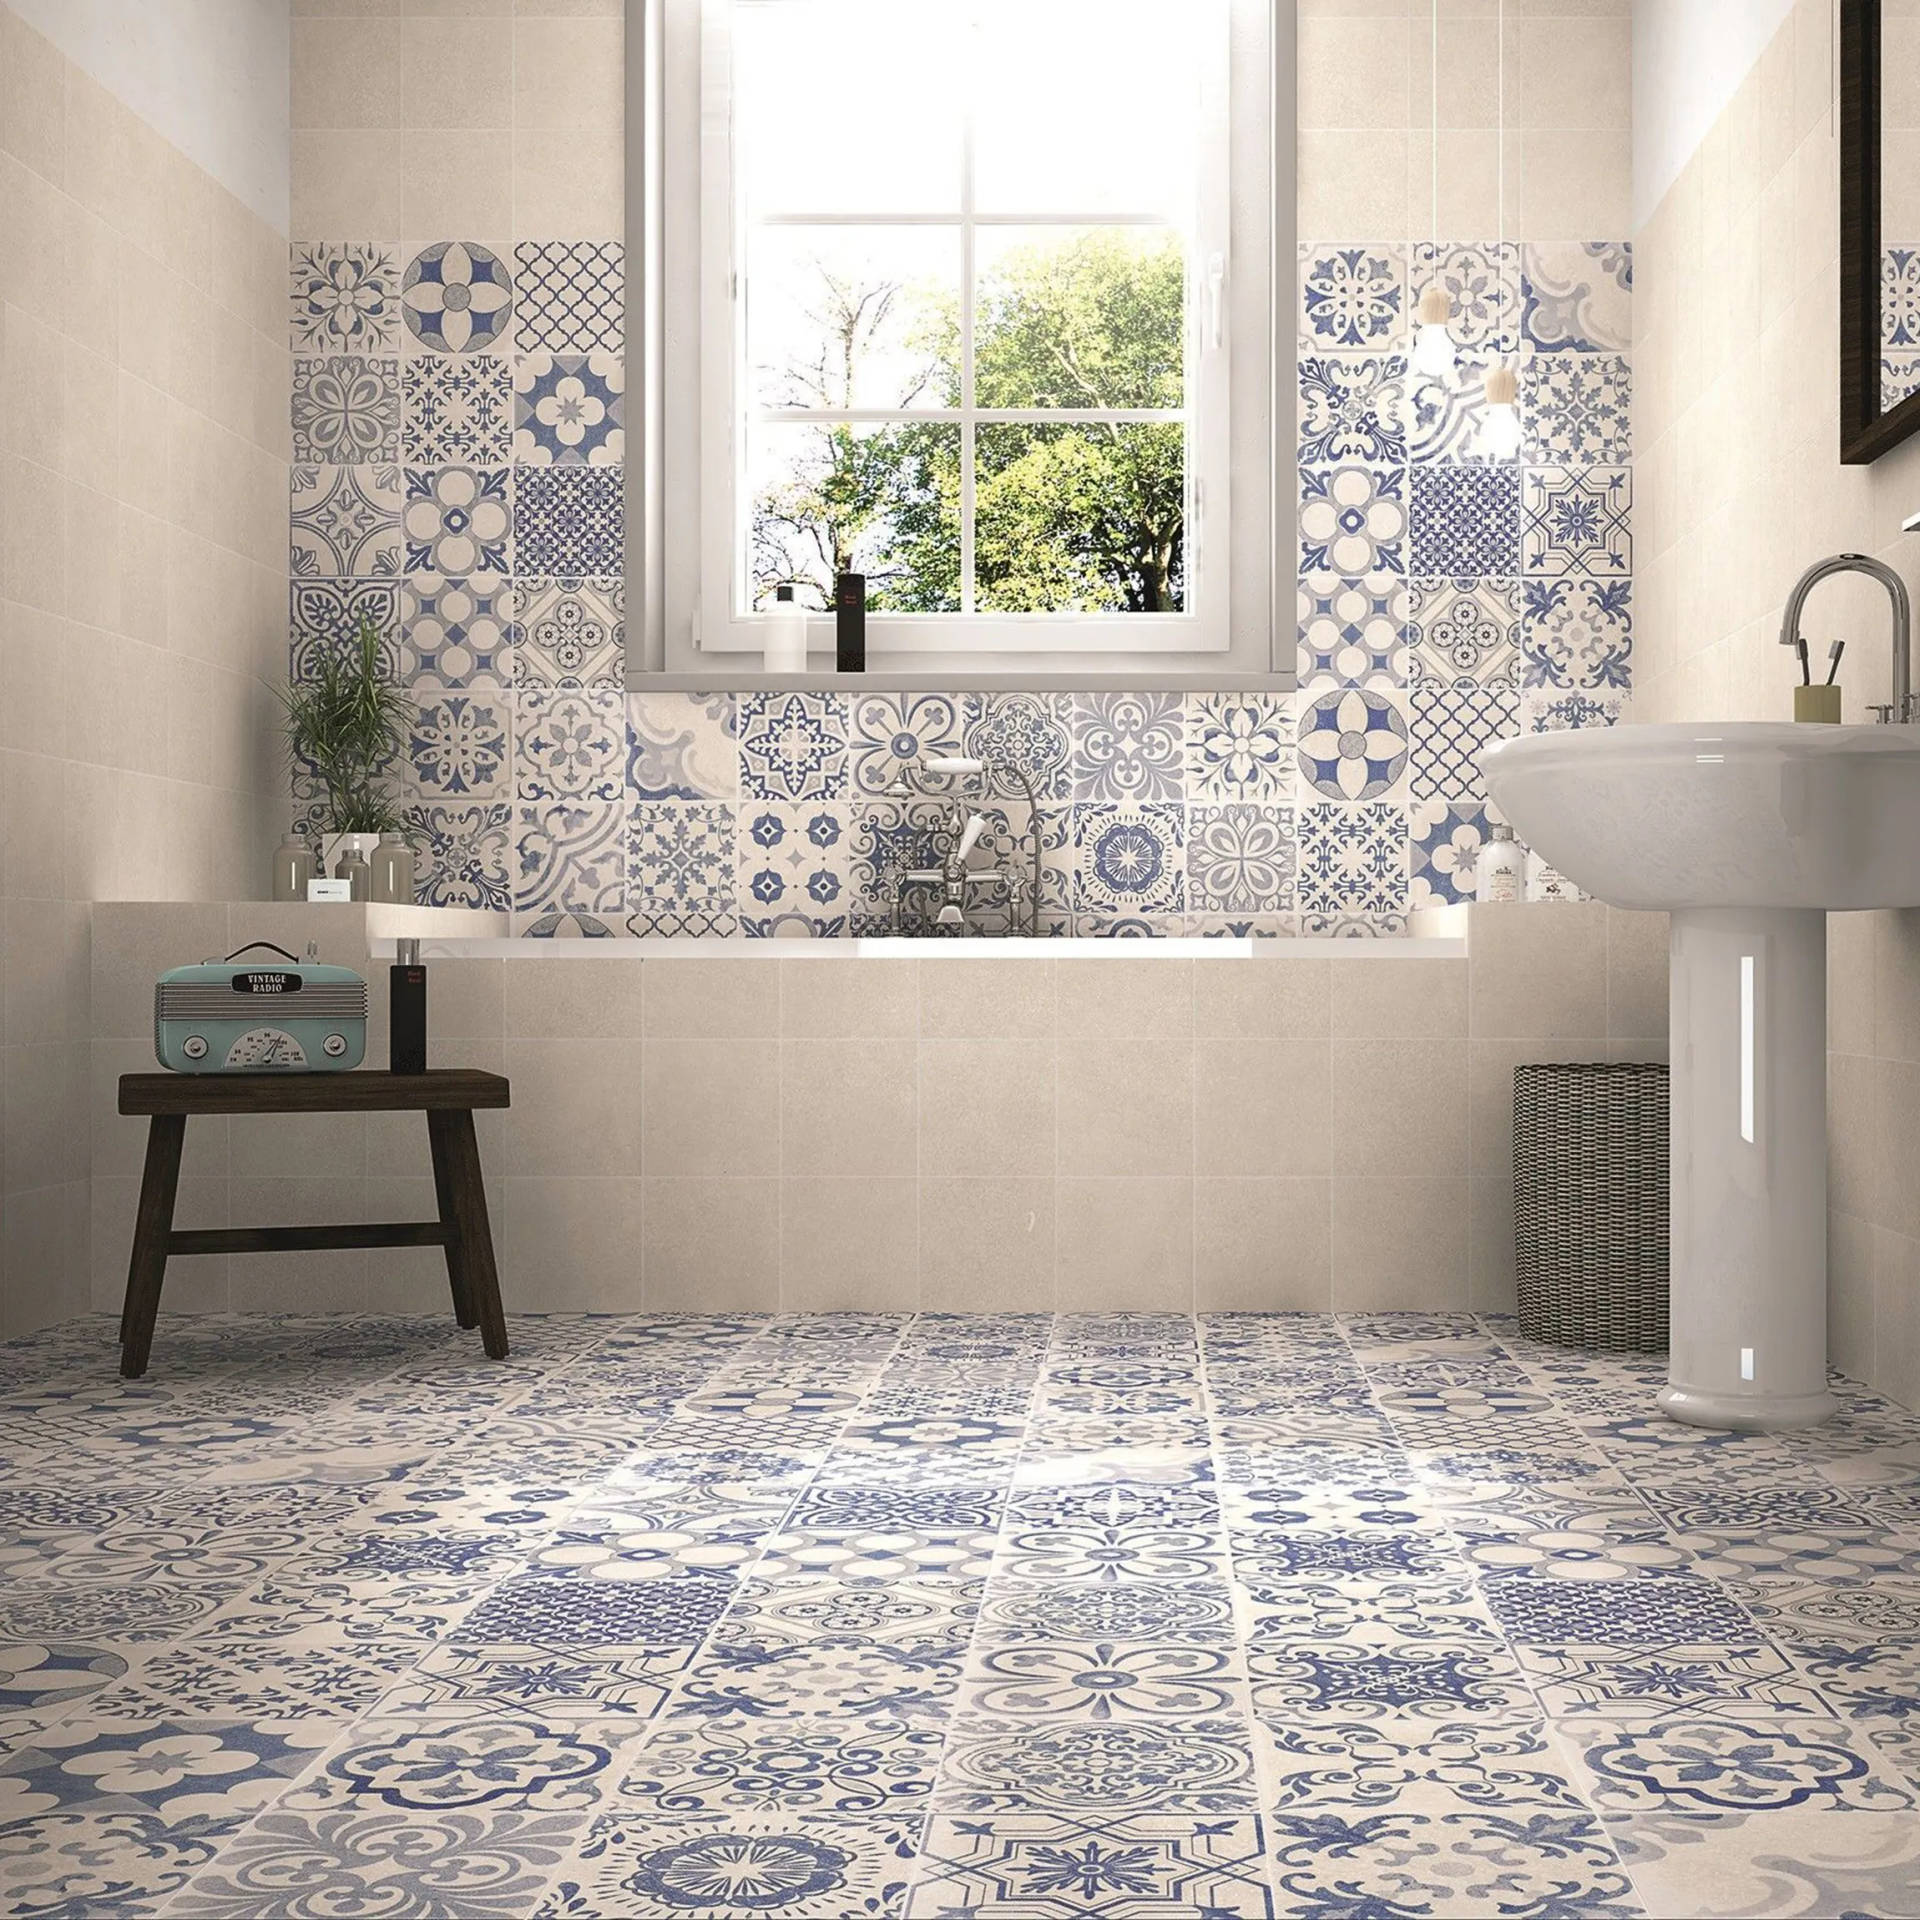 Greek Inspired Floor Tiles Picture